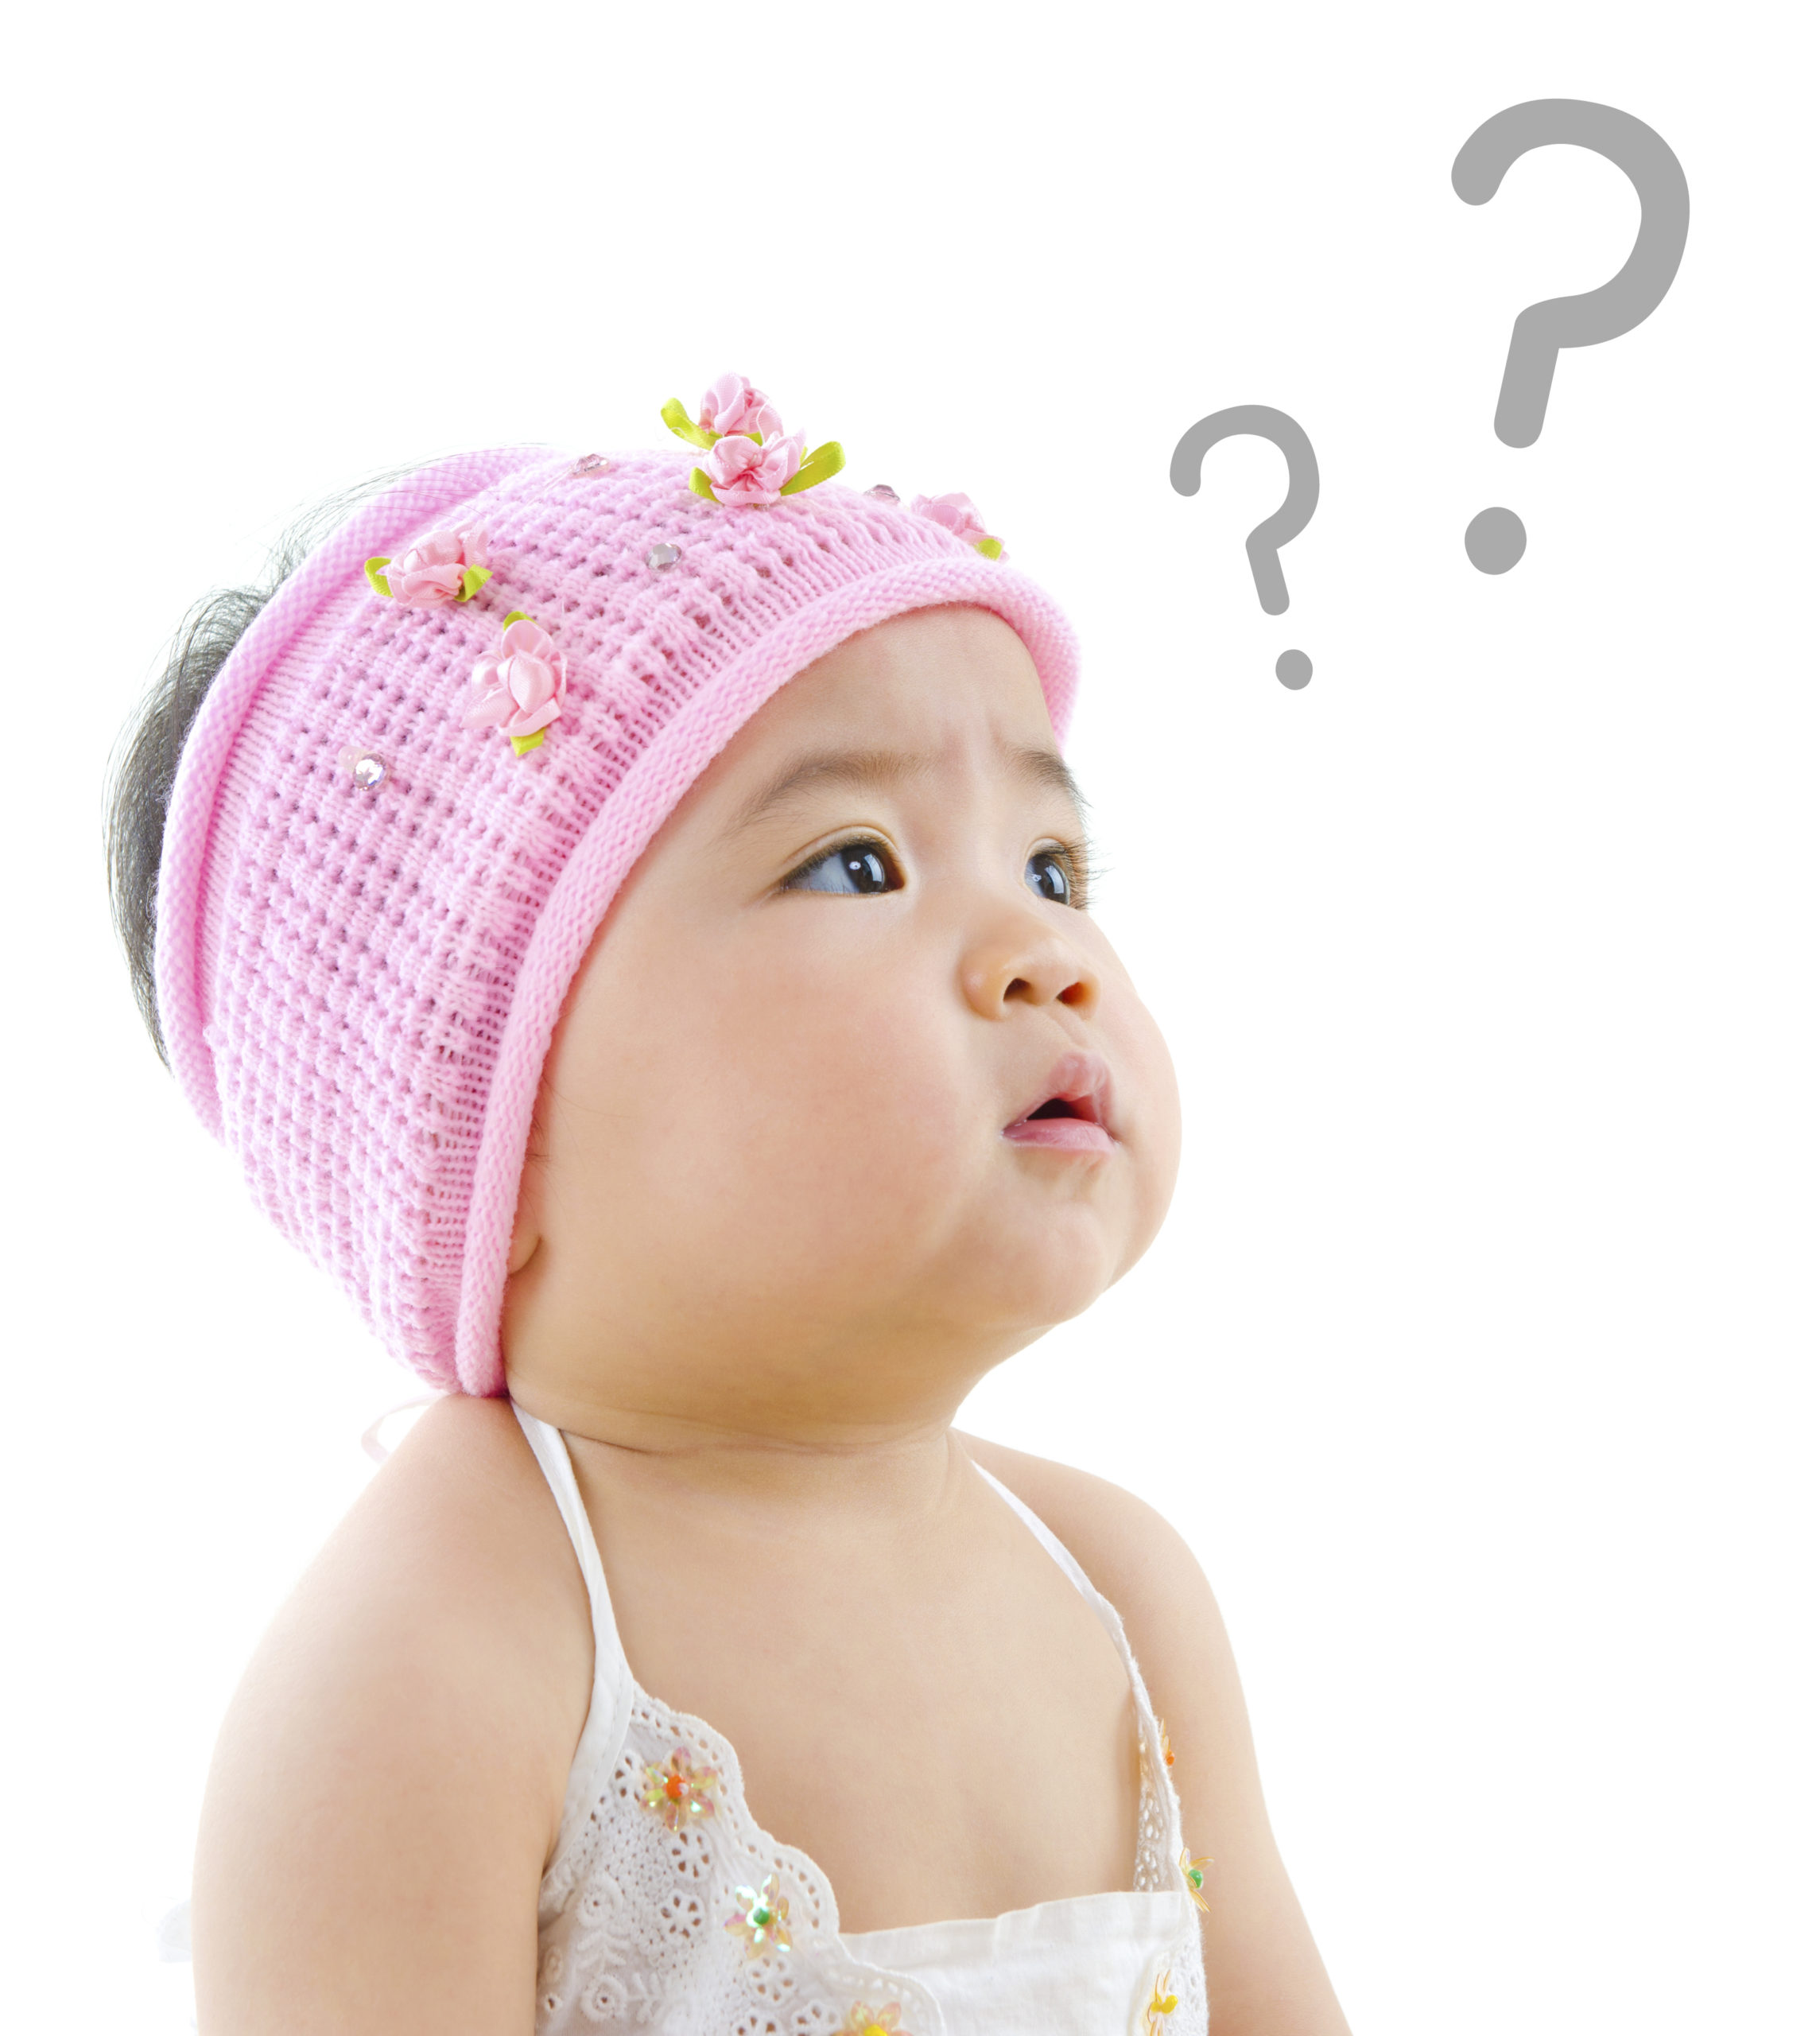 赤ちゃんの飛行機はいつからok 健康への影響や乗る際のポイント 持ち物を解説 Fam S Baby